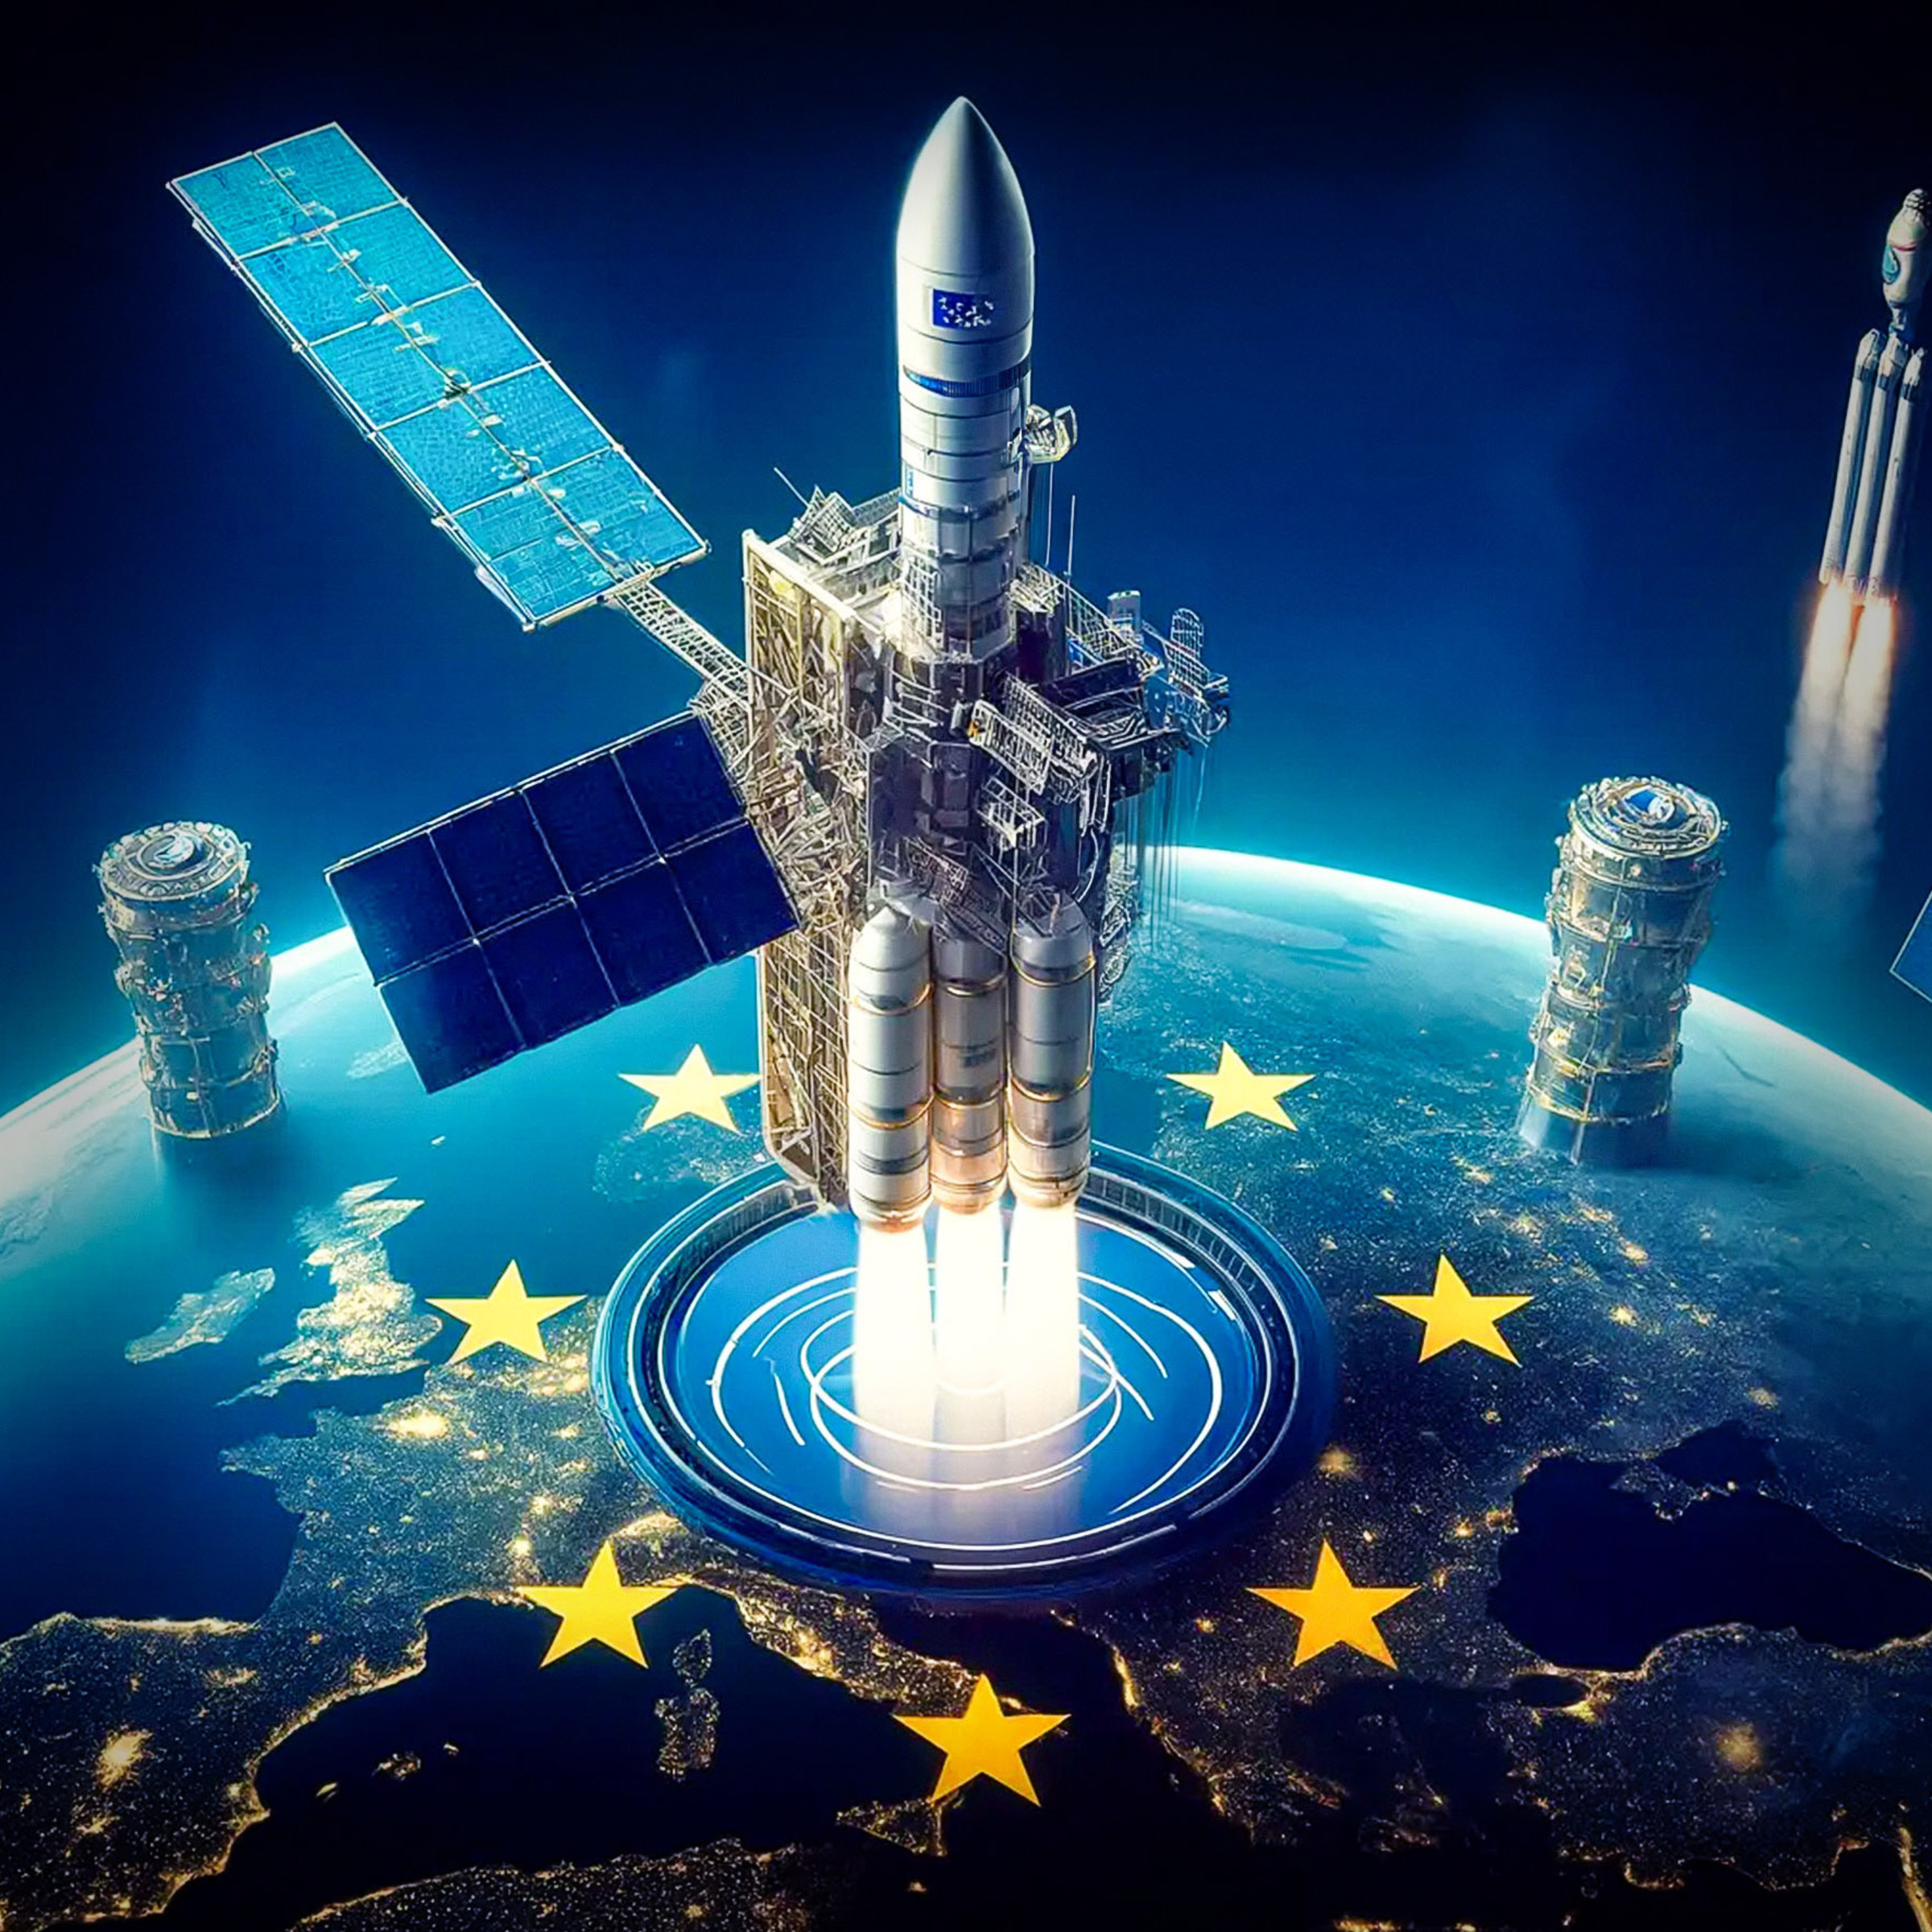 Europäische Raumfahrt: Mit neuen Raketen und Satelliten Souveränität zurückerobern (Express)